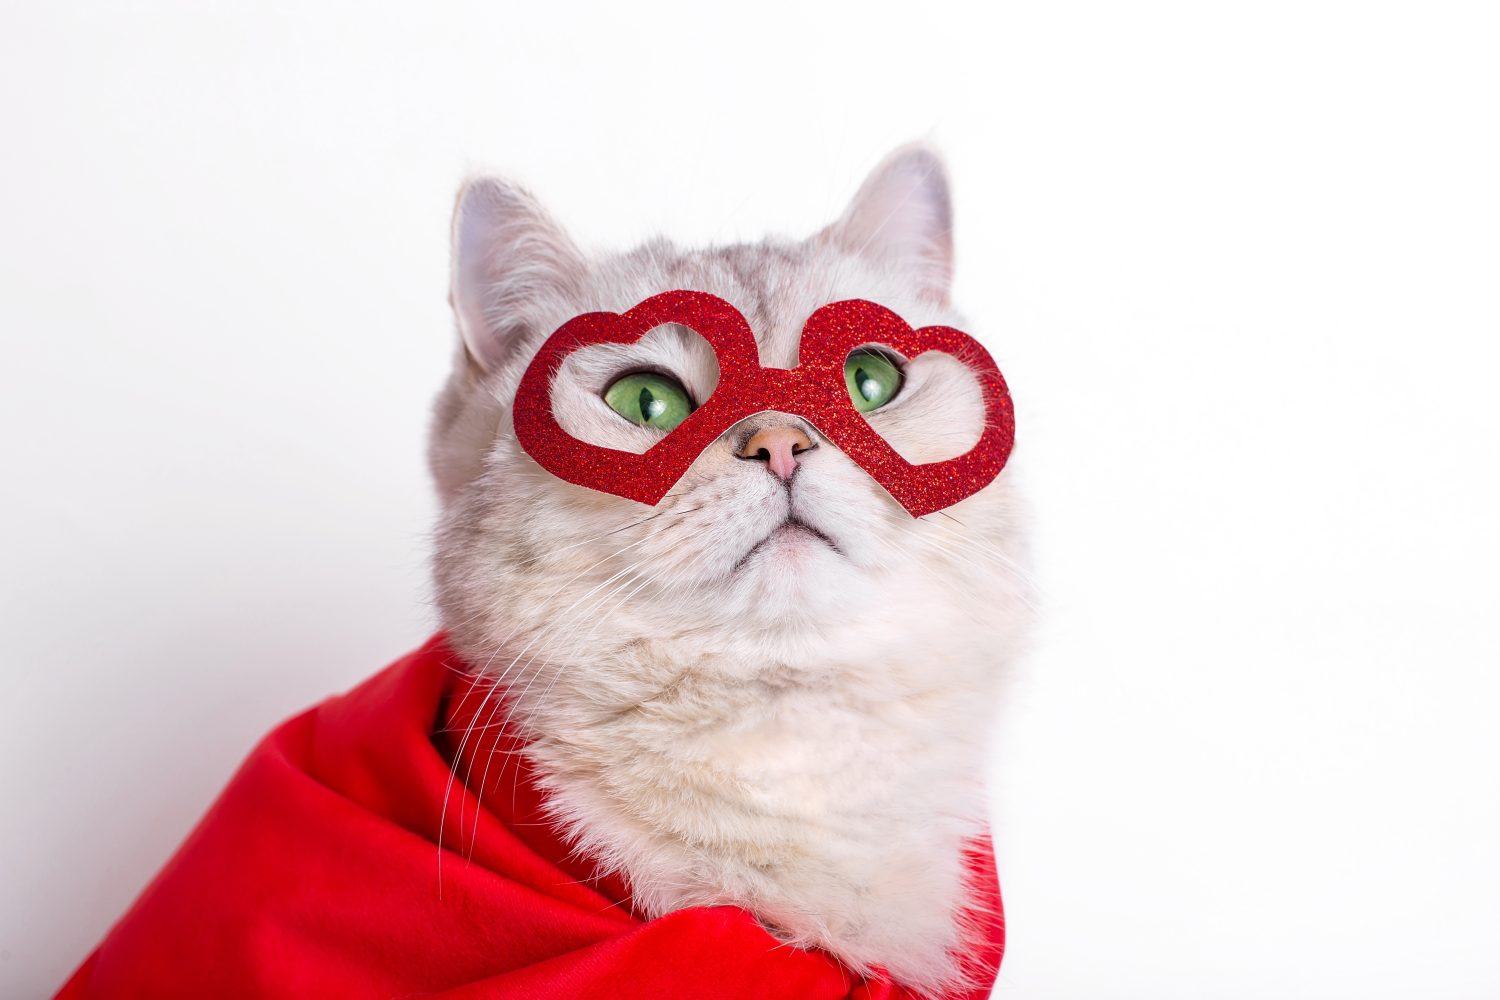 un simpatico gatto bianco con una maschera rossa a forma di cuori e un mantello rosso.